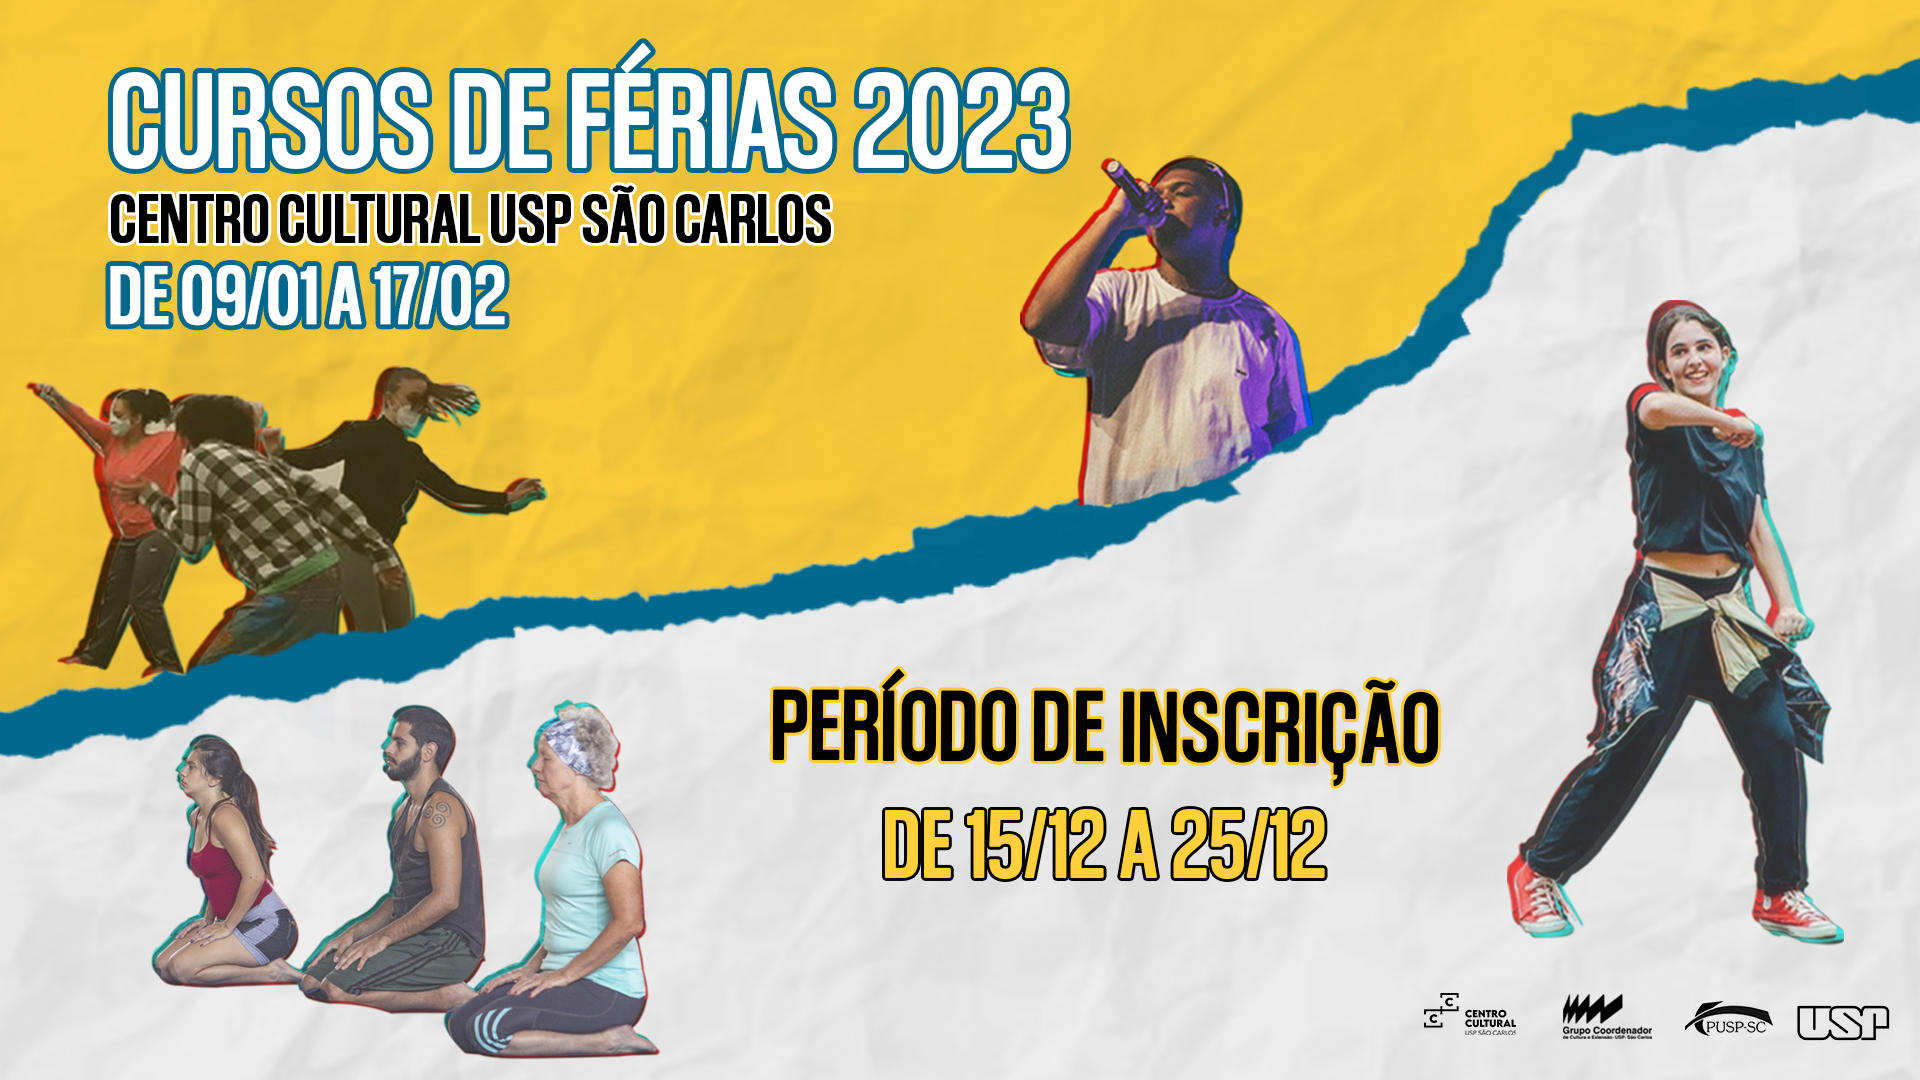 São Carlos Clube - Começa hoje (20/12) as inscrições para a